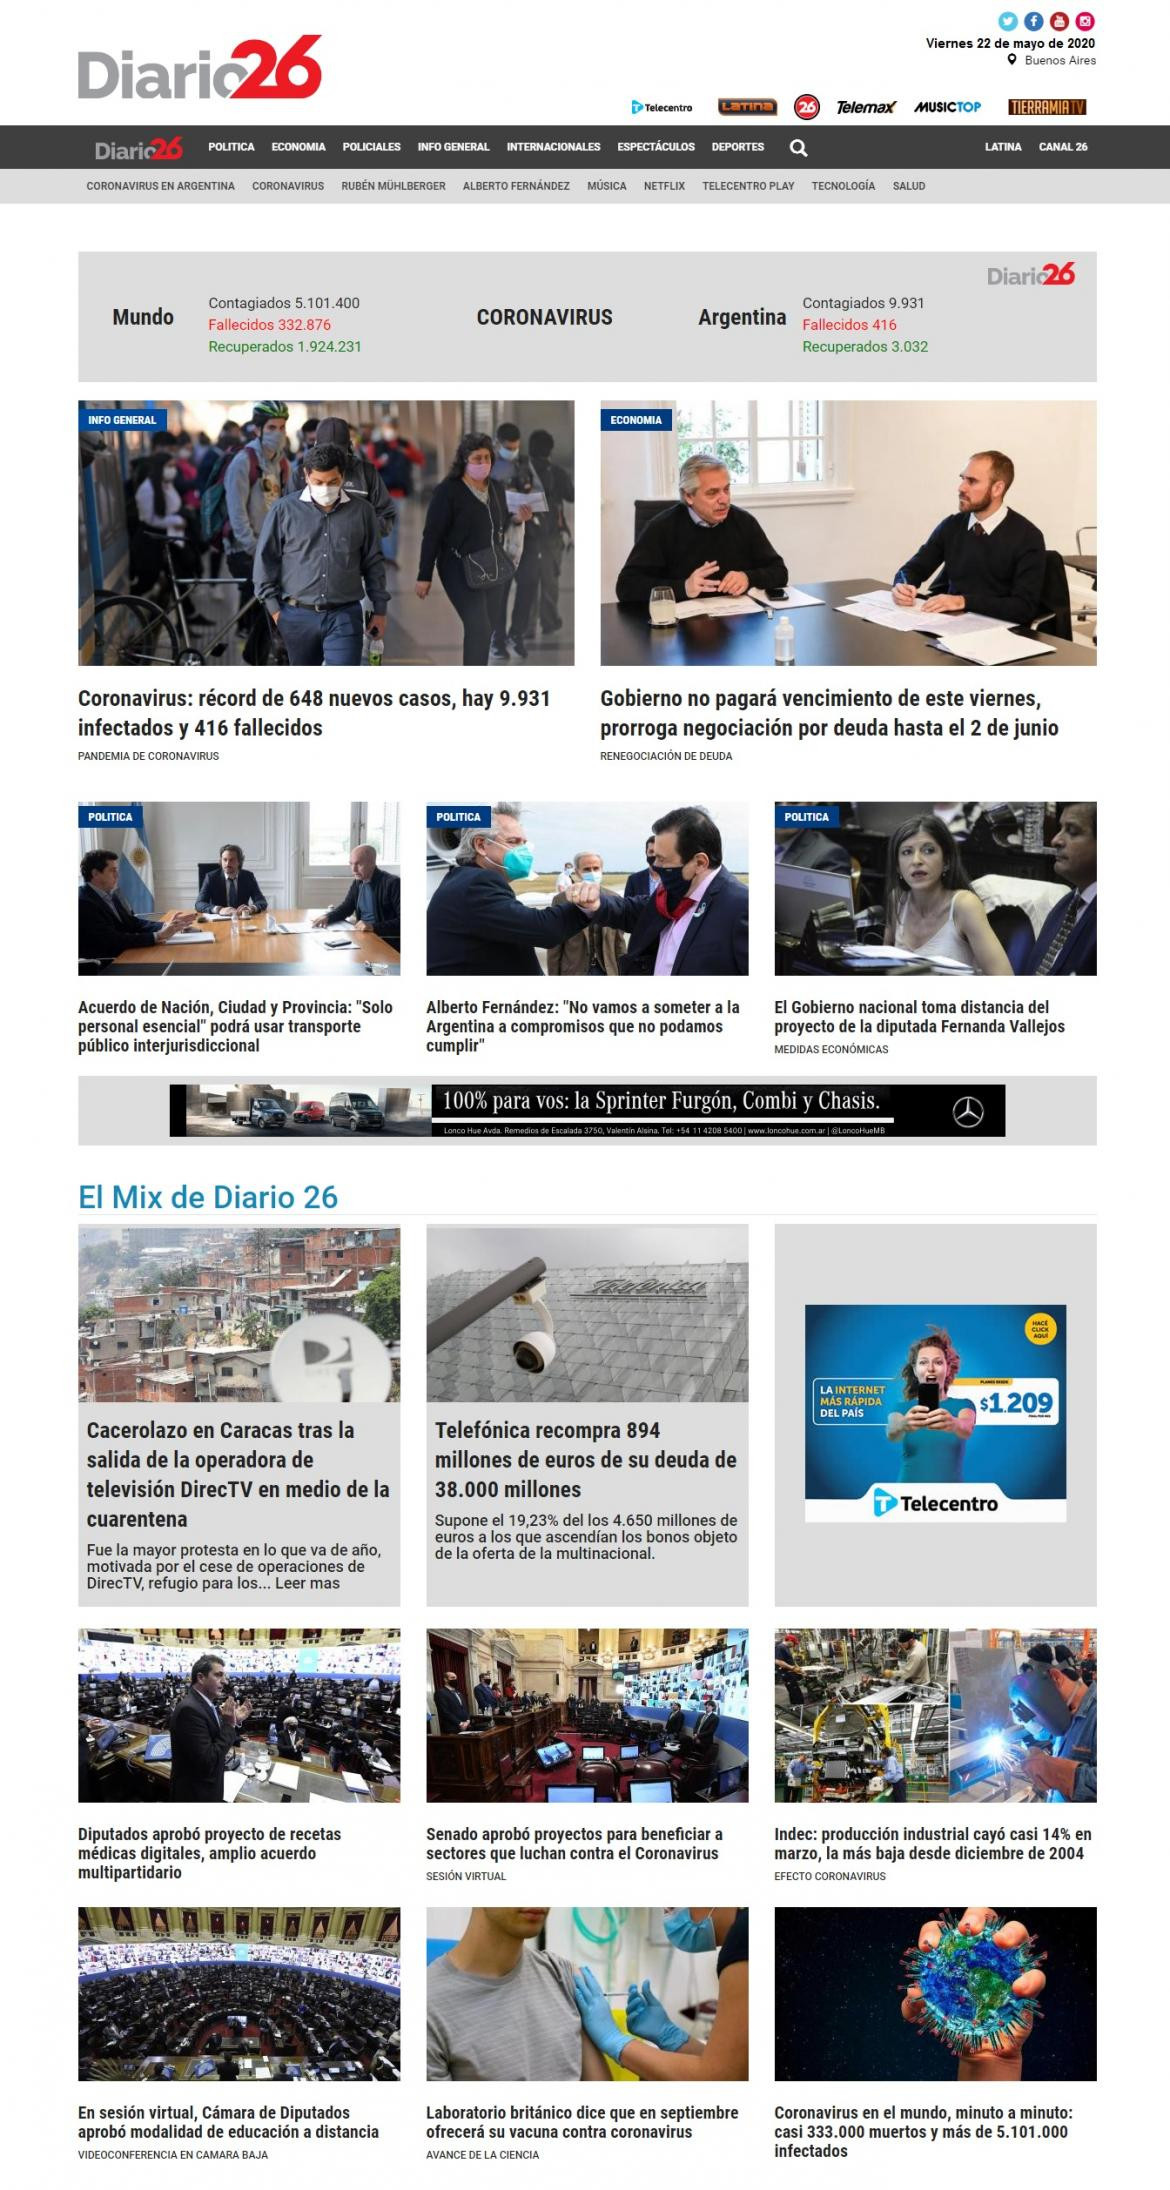 Tapas de diarios, Diario 26, viernes 22 de mayo de 2020